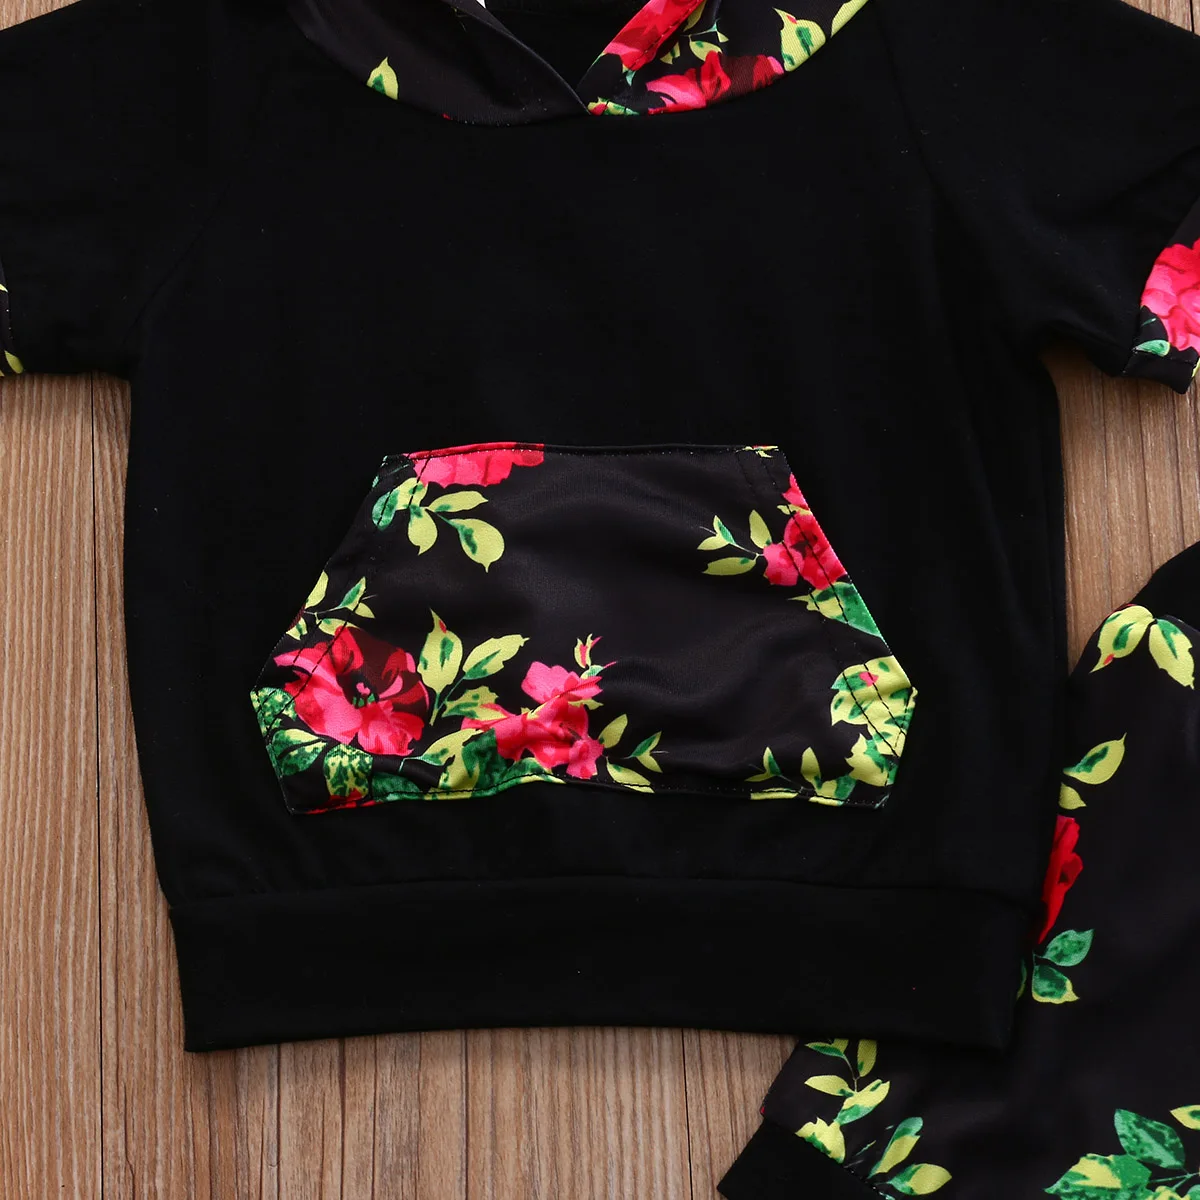 Hi/магазин для новорожденных черная футболка с цветочным принтом маленьких